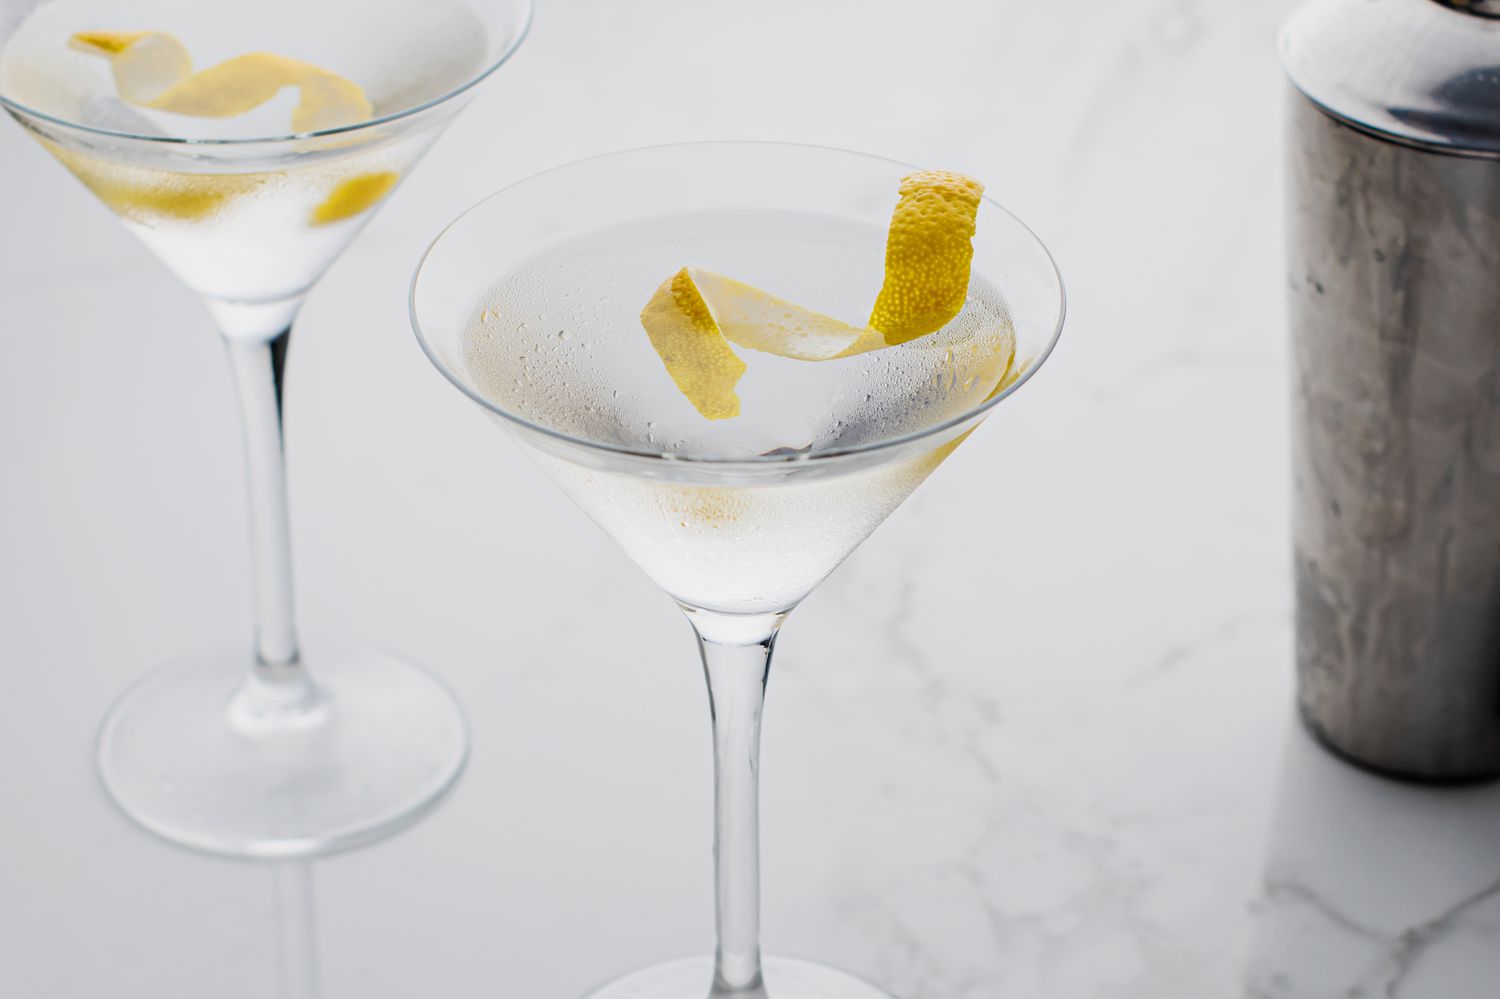 James Bond's Vesper martini cocktail with a lemon twist